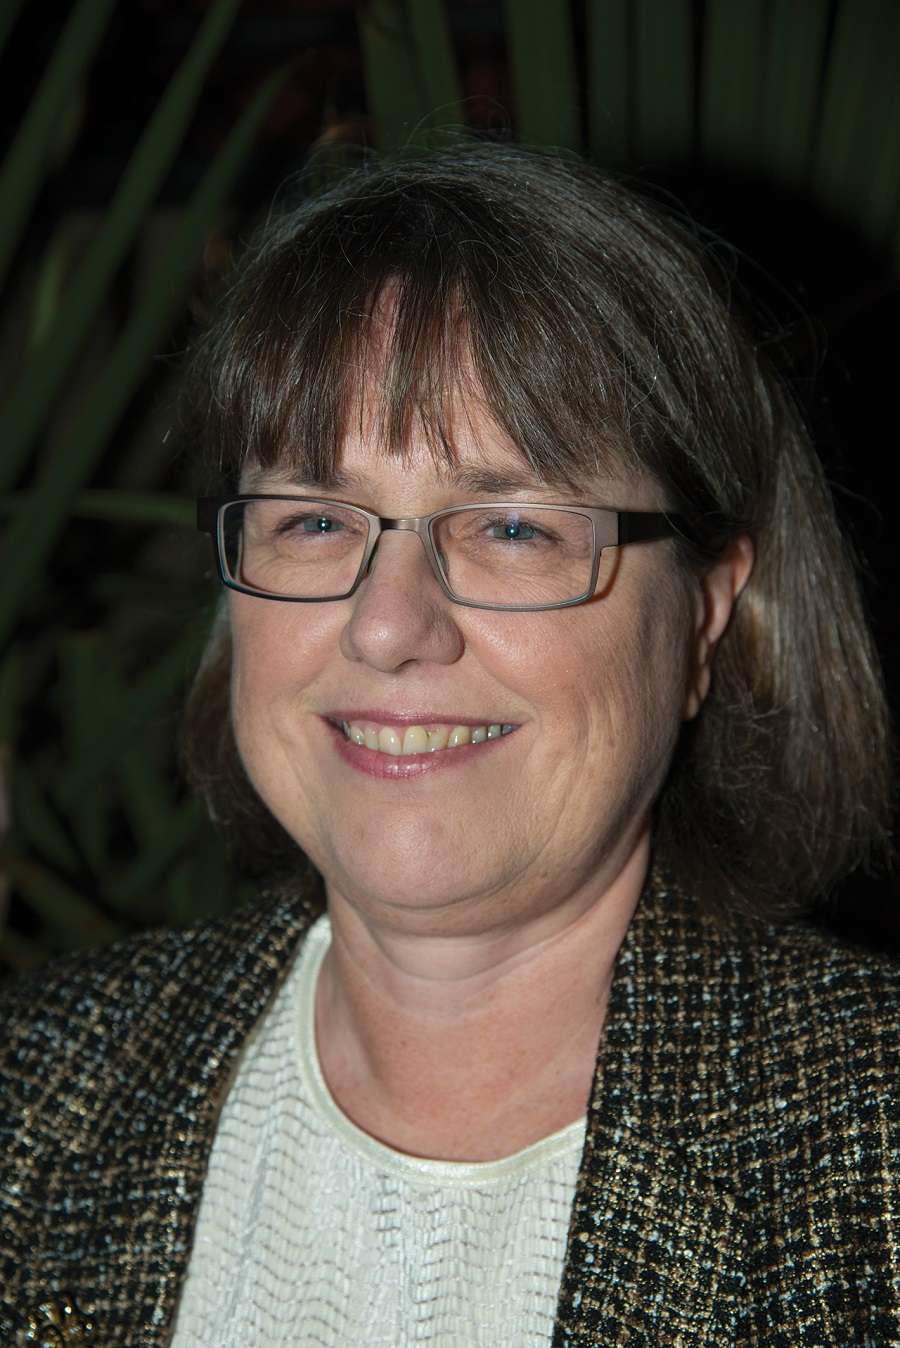 Donna Strickland est une physicienne canadienne, lauréate du prix Nobel de physique 2018 pour ses travaux révolutionnaires sur les lasers. © Wikipedia, CC By-Sa 4.0